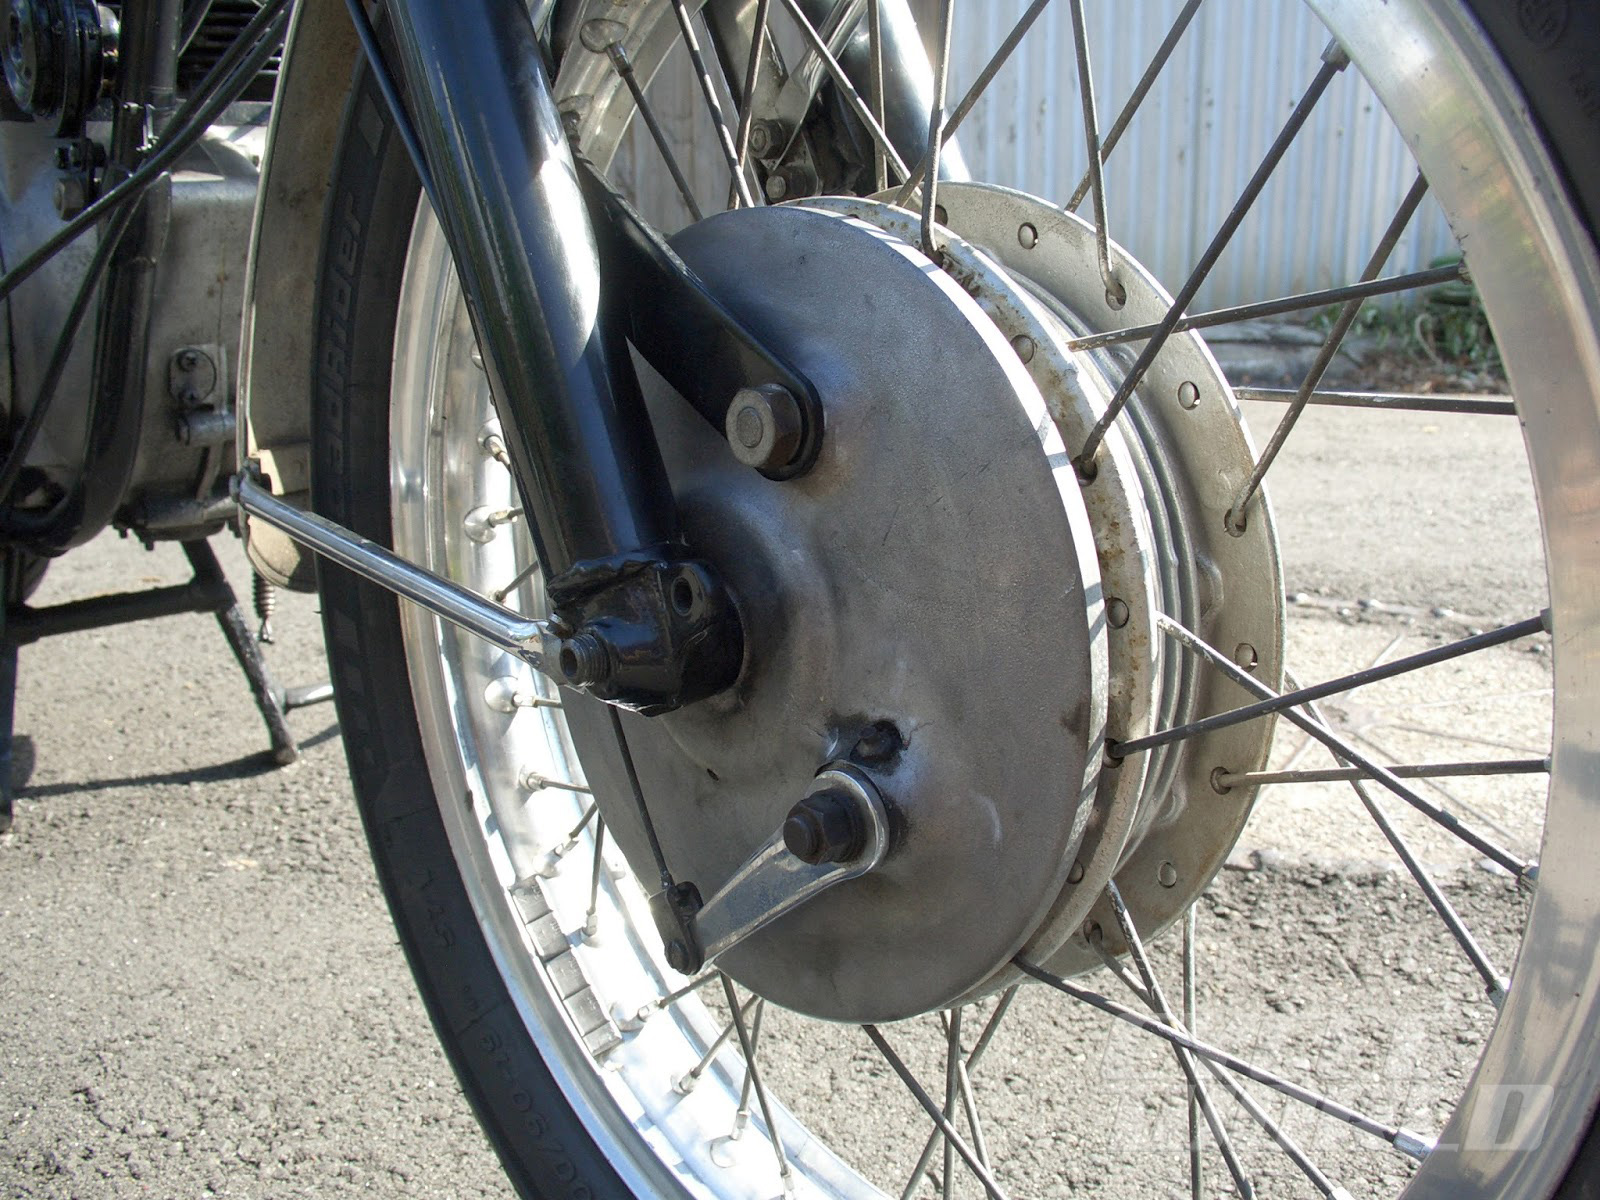 Universal Bike Bicycle Brake Solid Metal Rear Wheel Up Brake Drum Assembly Set